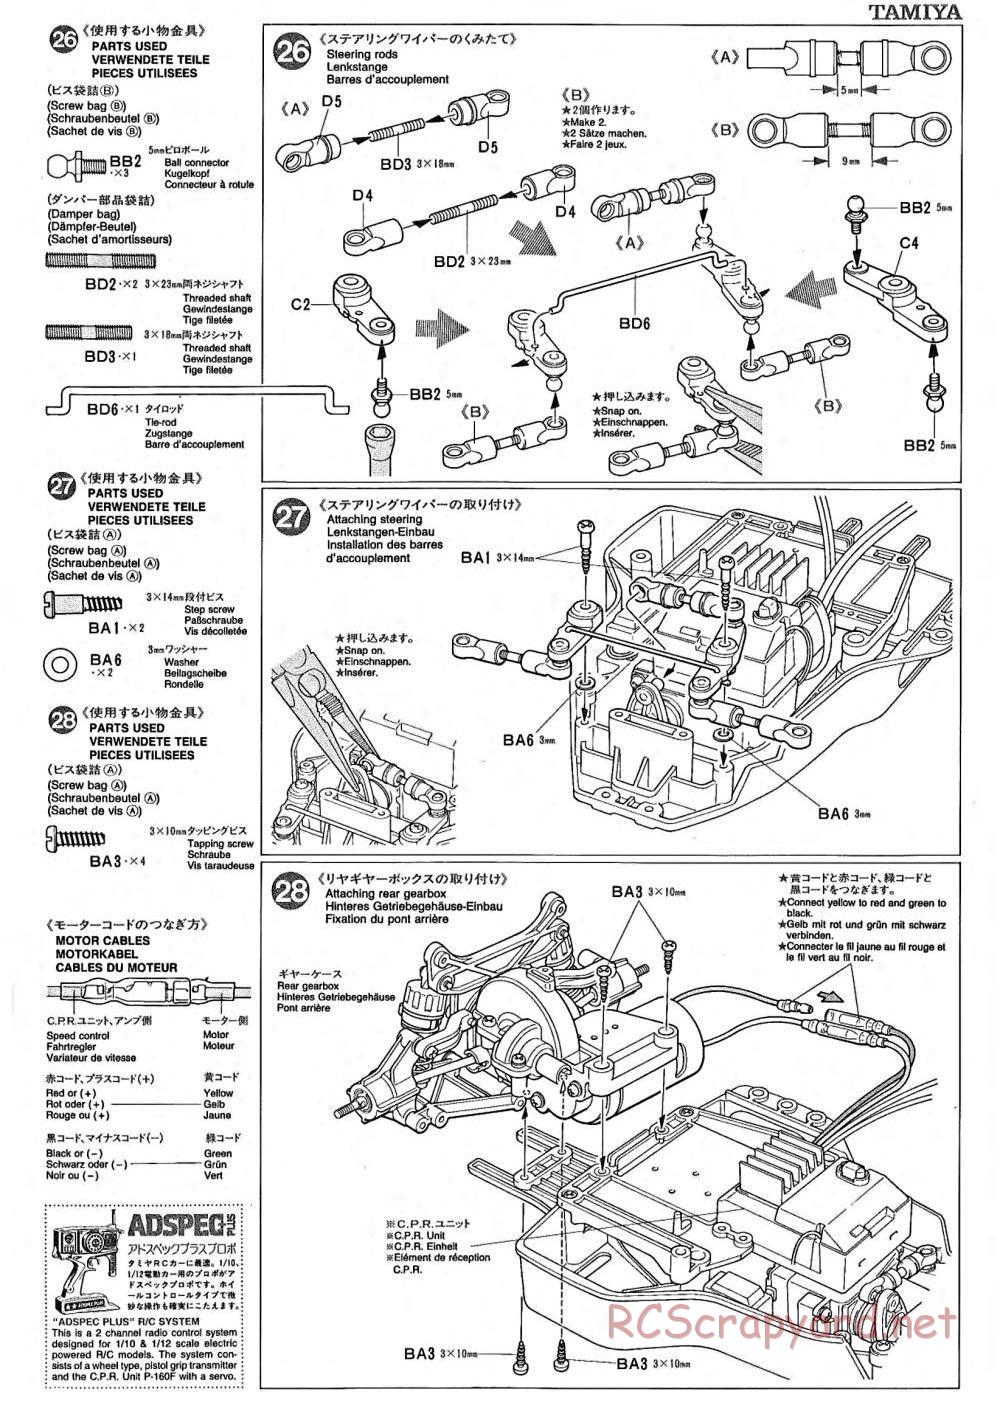 Tamiya - TA-02 Chassis - Manual - Page 10